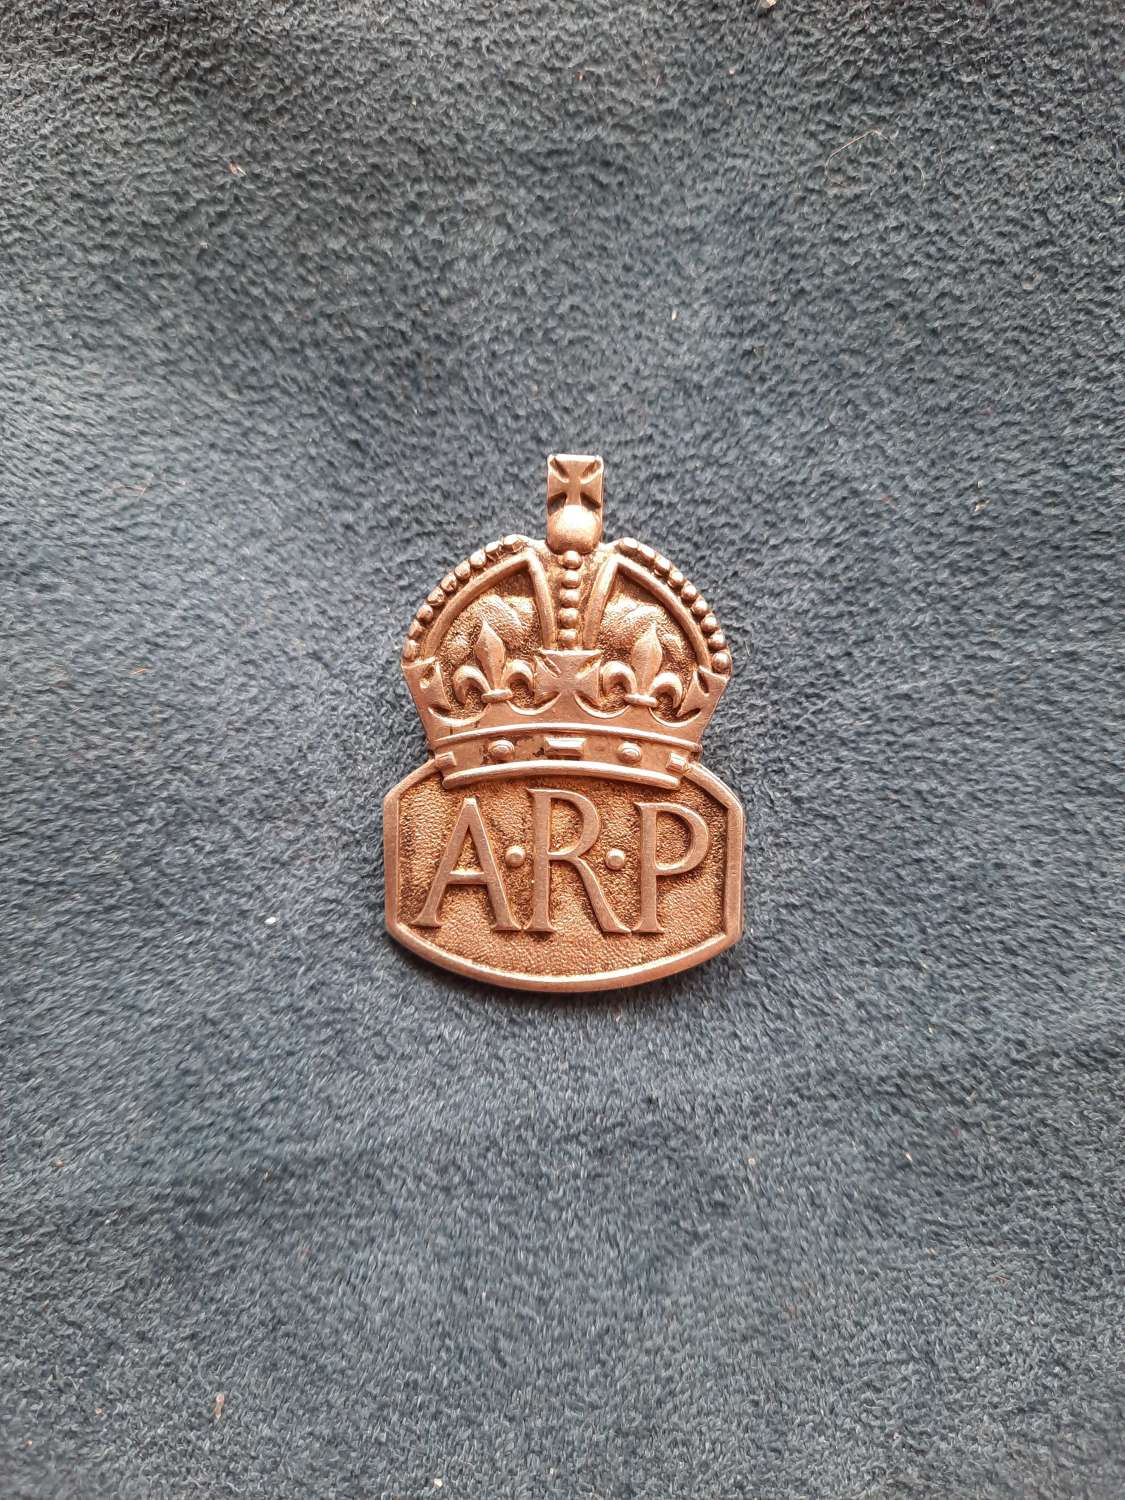 ARP Lapel Badge